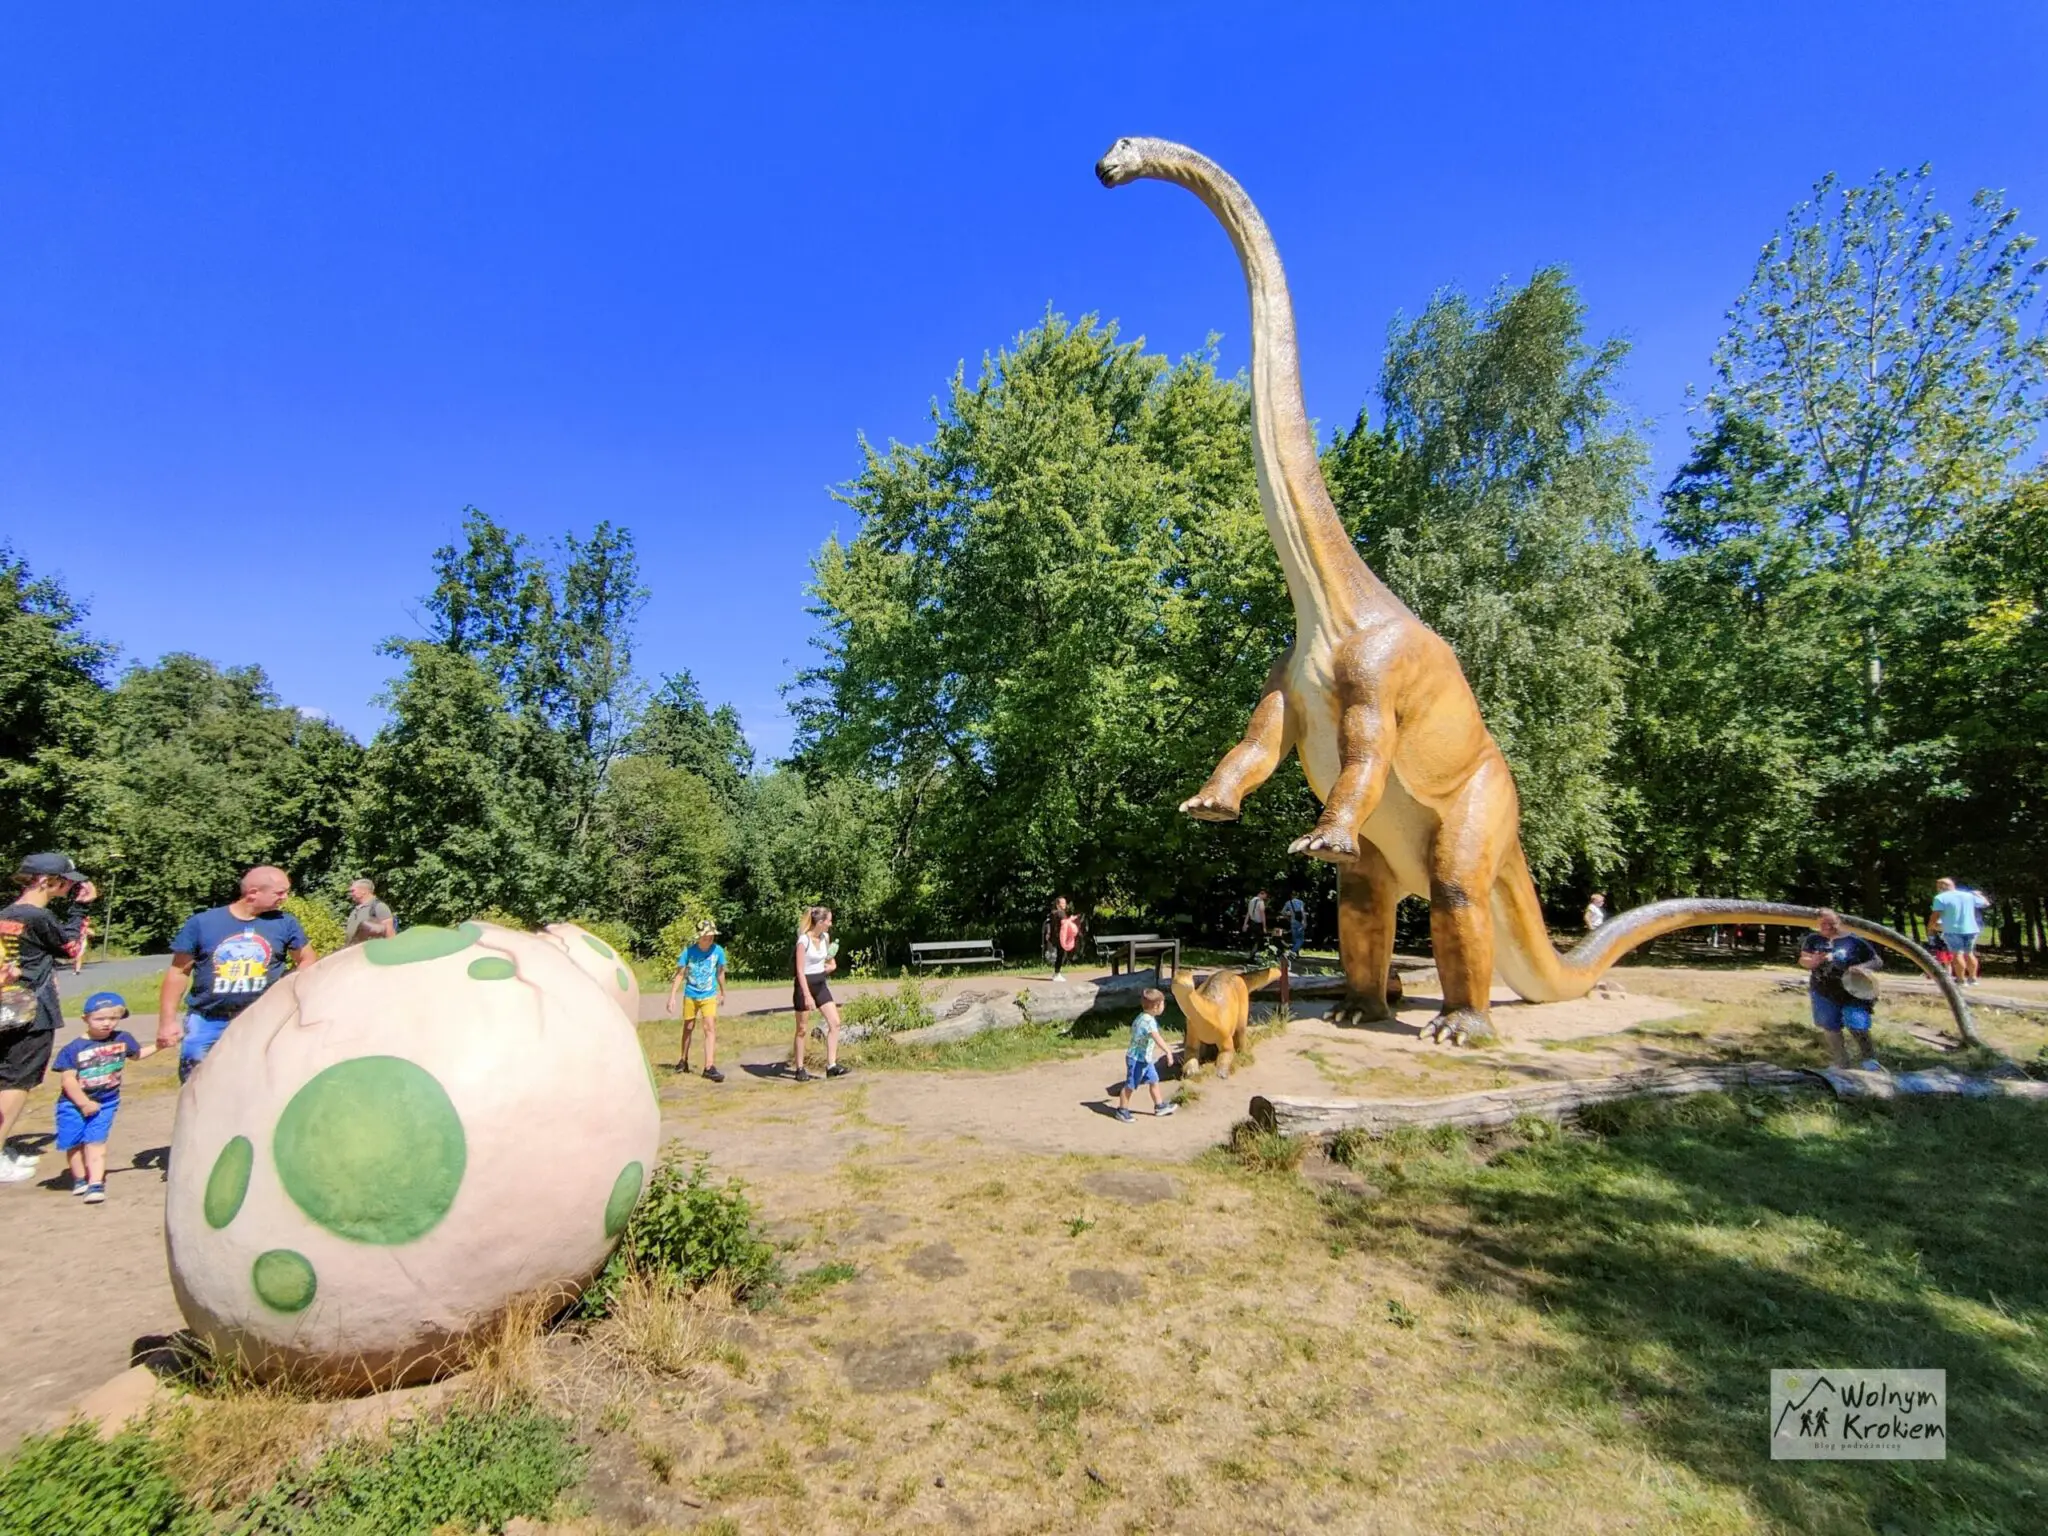 Park dinozaurów w Lubinie - darmowa ptaszarnia i mini zoo - Zoo Lubin